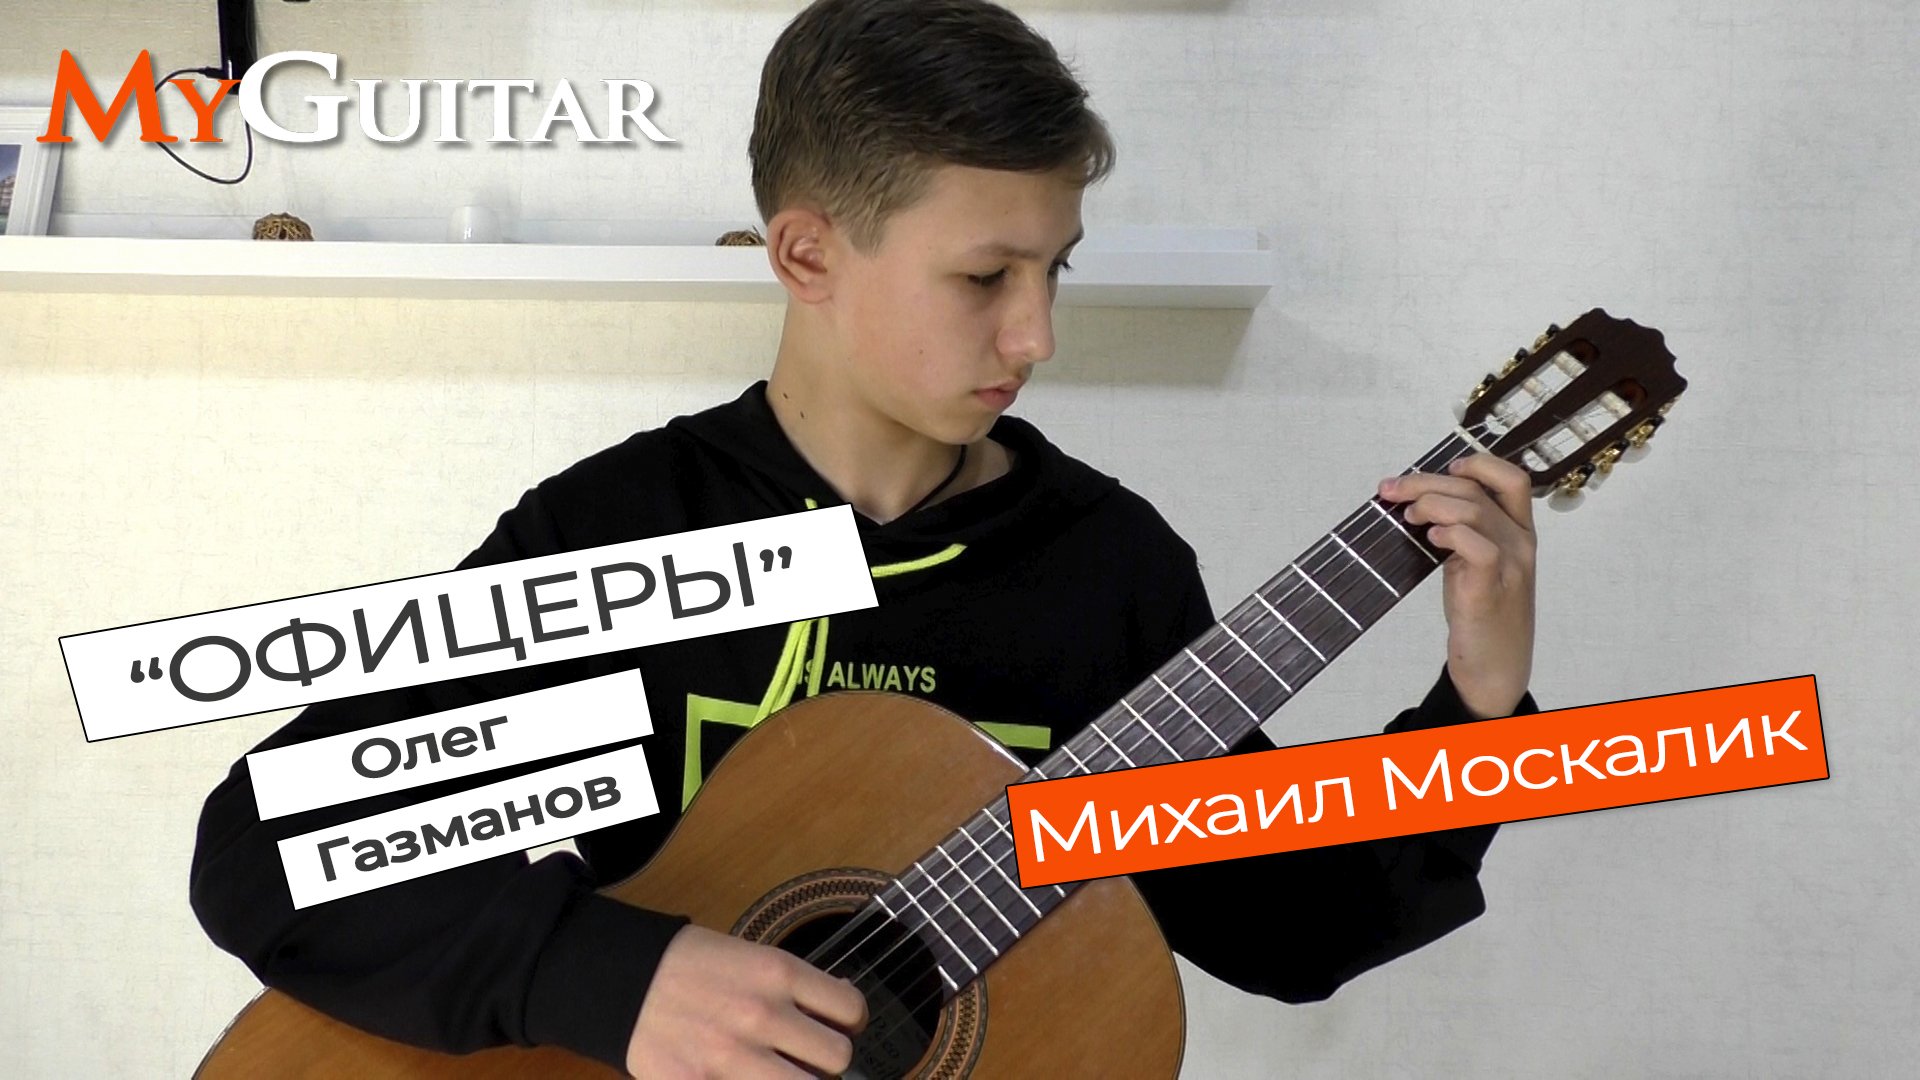 "Офицеры", Олег Газманов. Исполняет Михаил Москалик, (13 лет). Ноты+Табы.